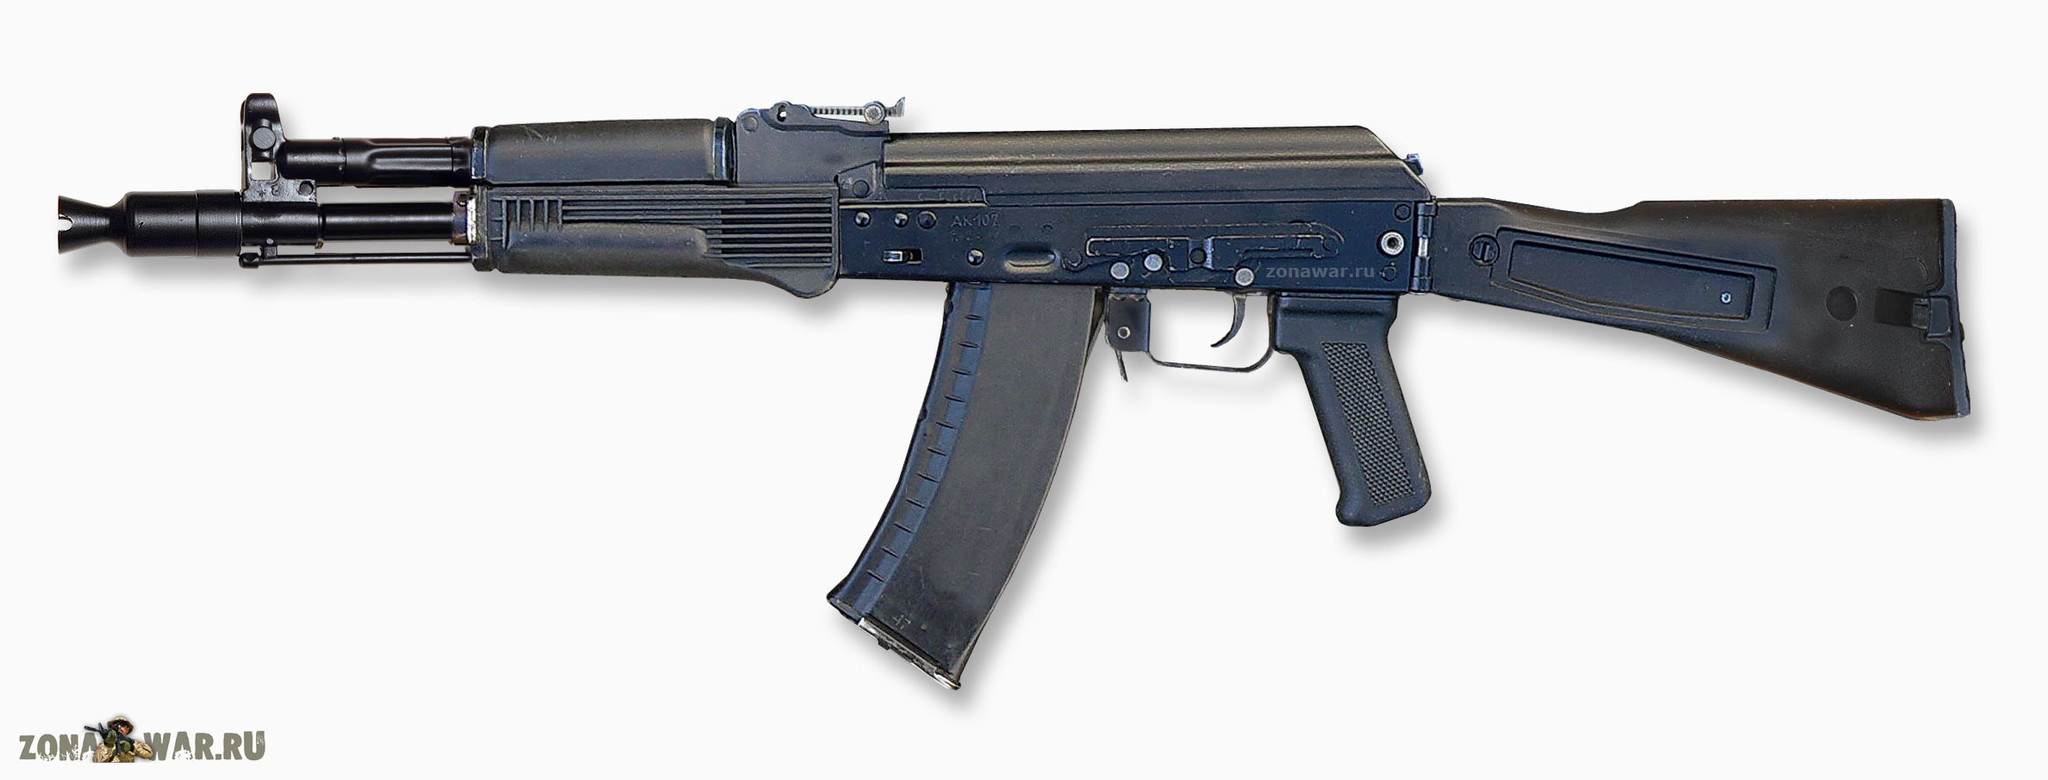 AK 105 assault rifle